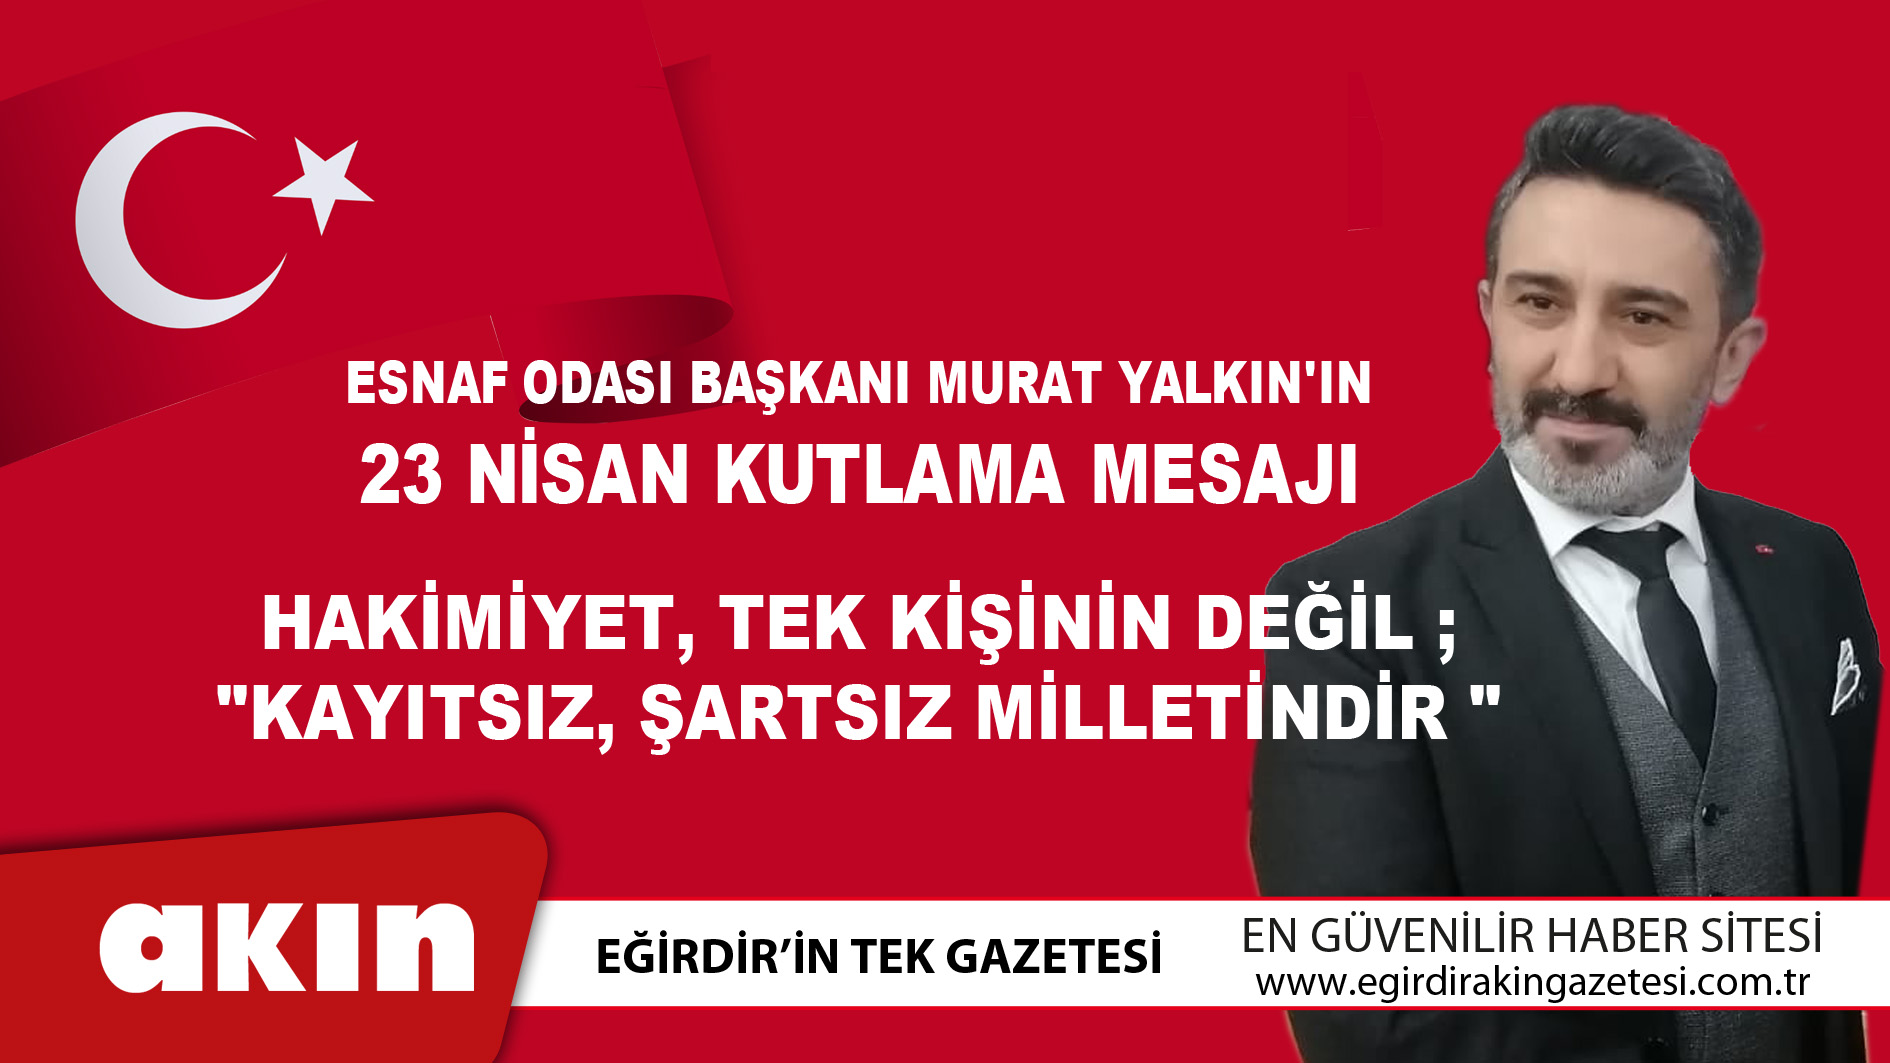 Esnaf Odası Başkanı Murat Yalkın'ın 23 Nisan Kutlama Mesajı